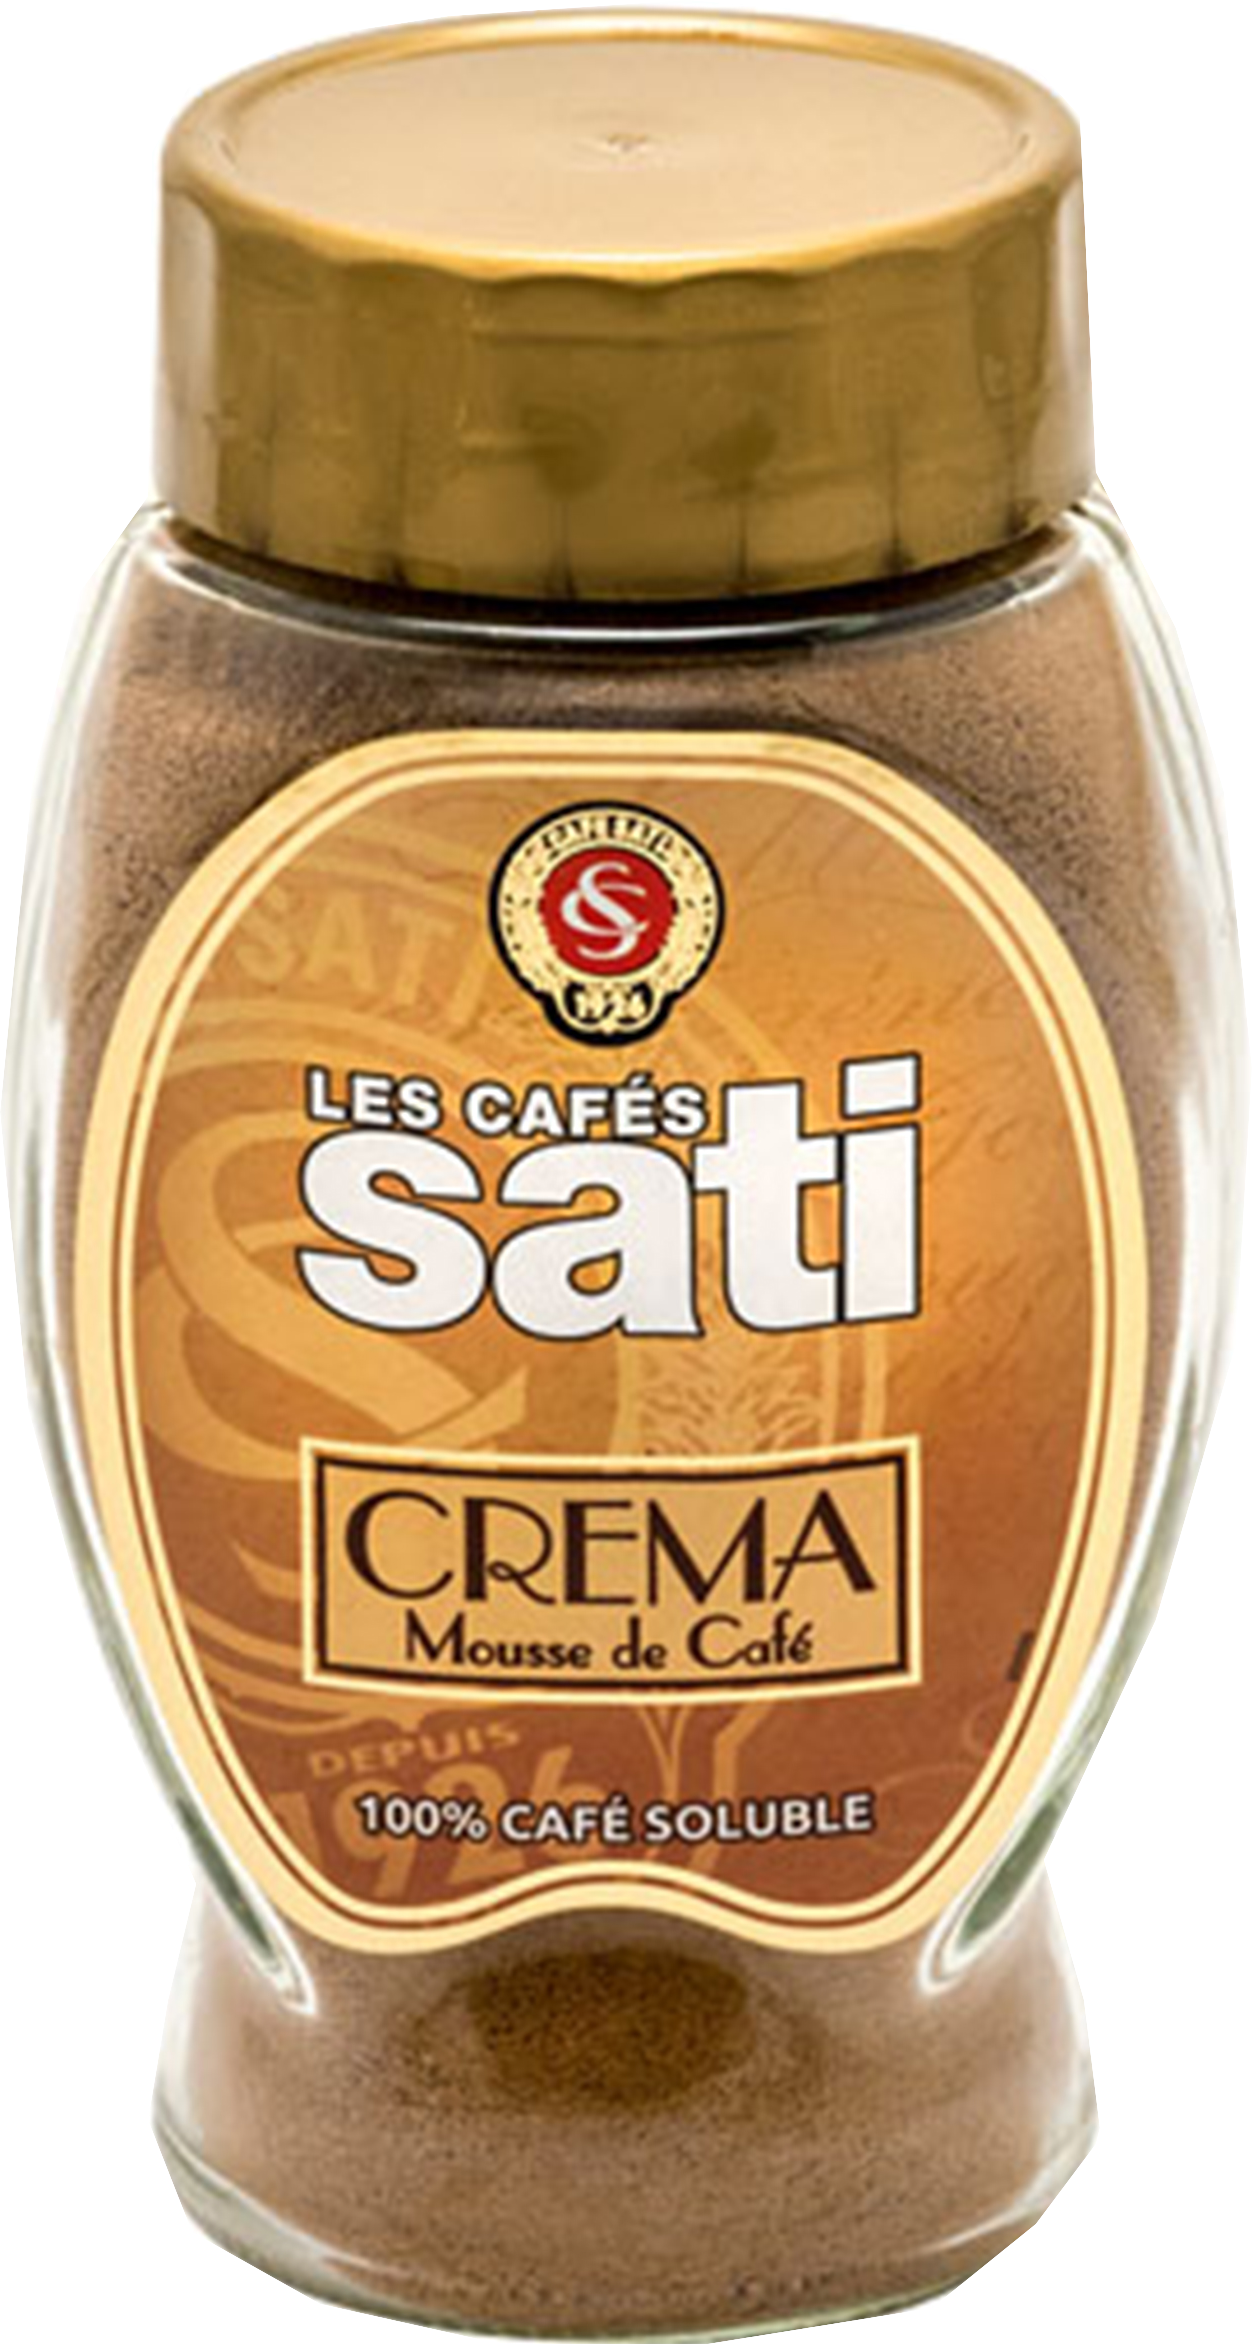 Les Caf?s Sati. Crema Mousse De Cafe 80 гр. стекл.банка